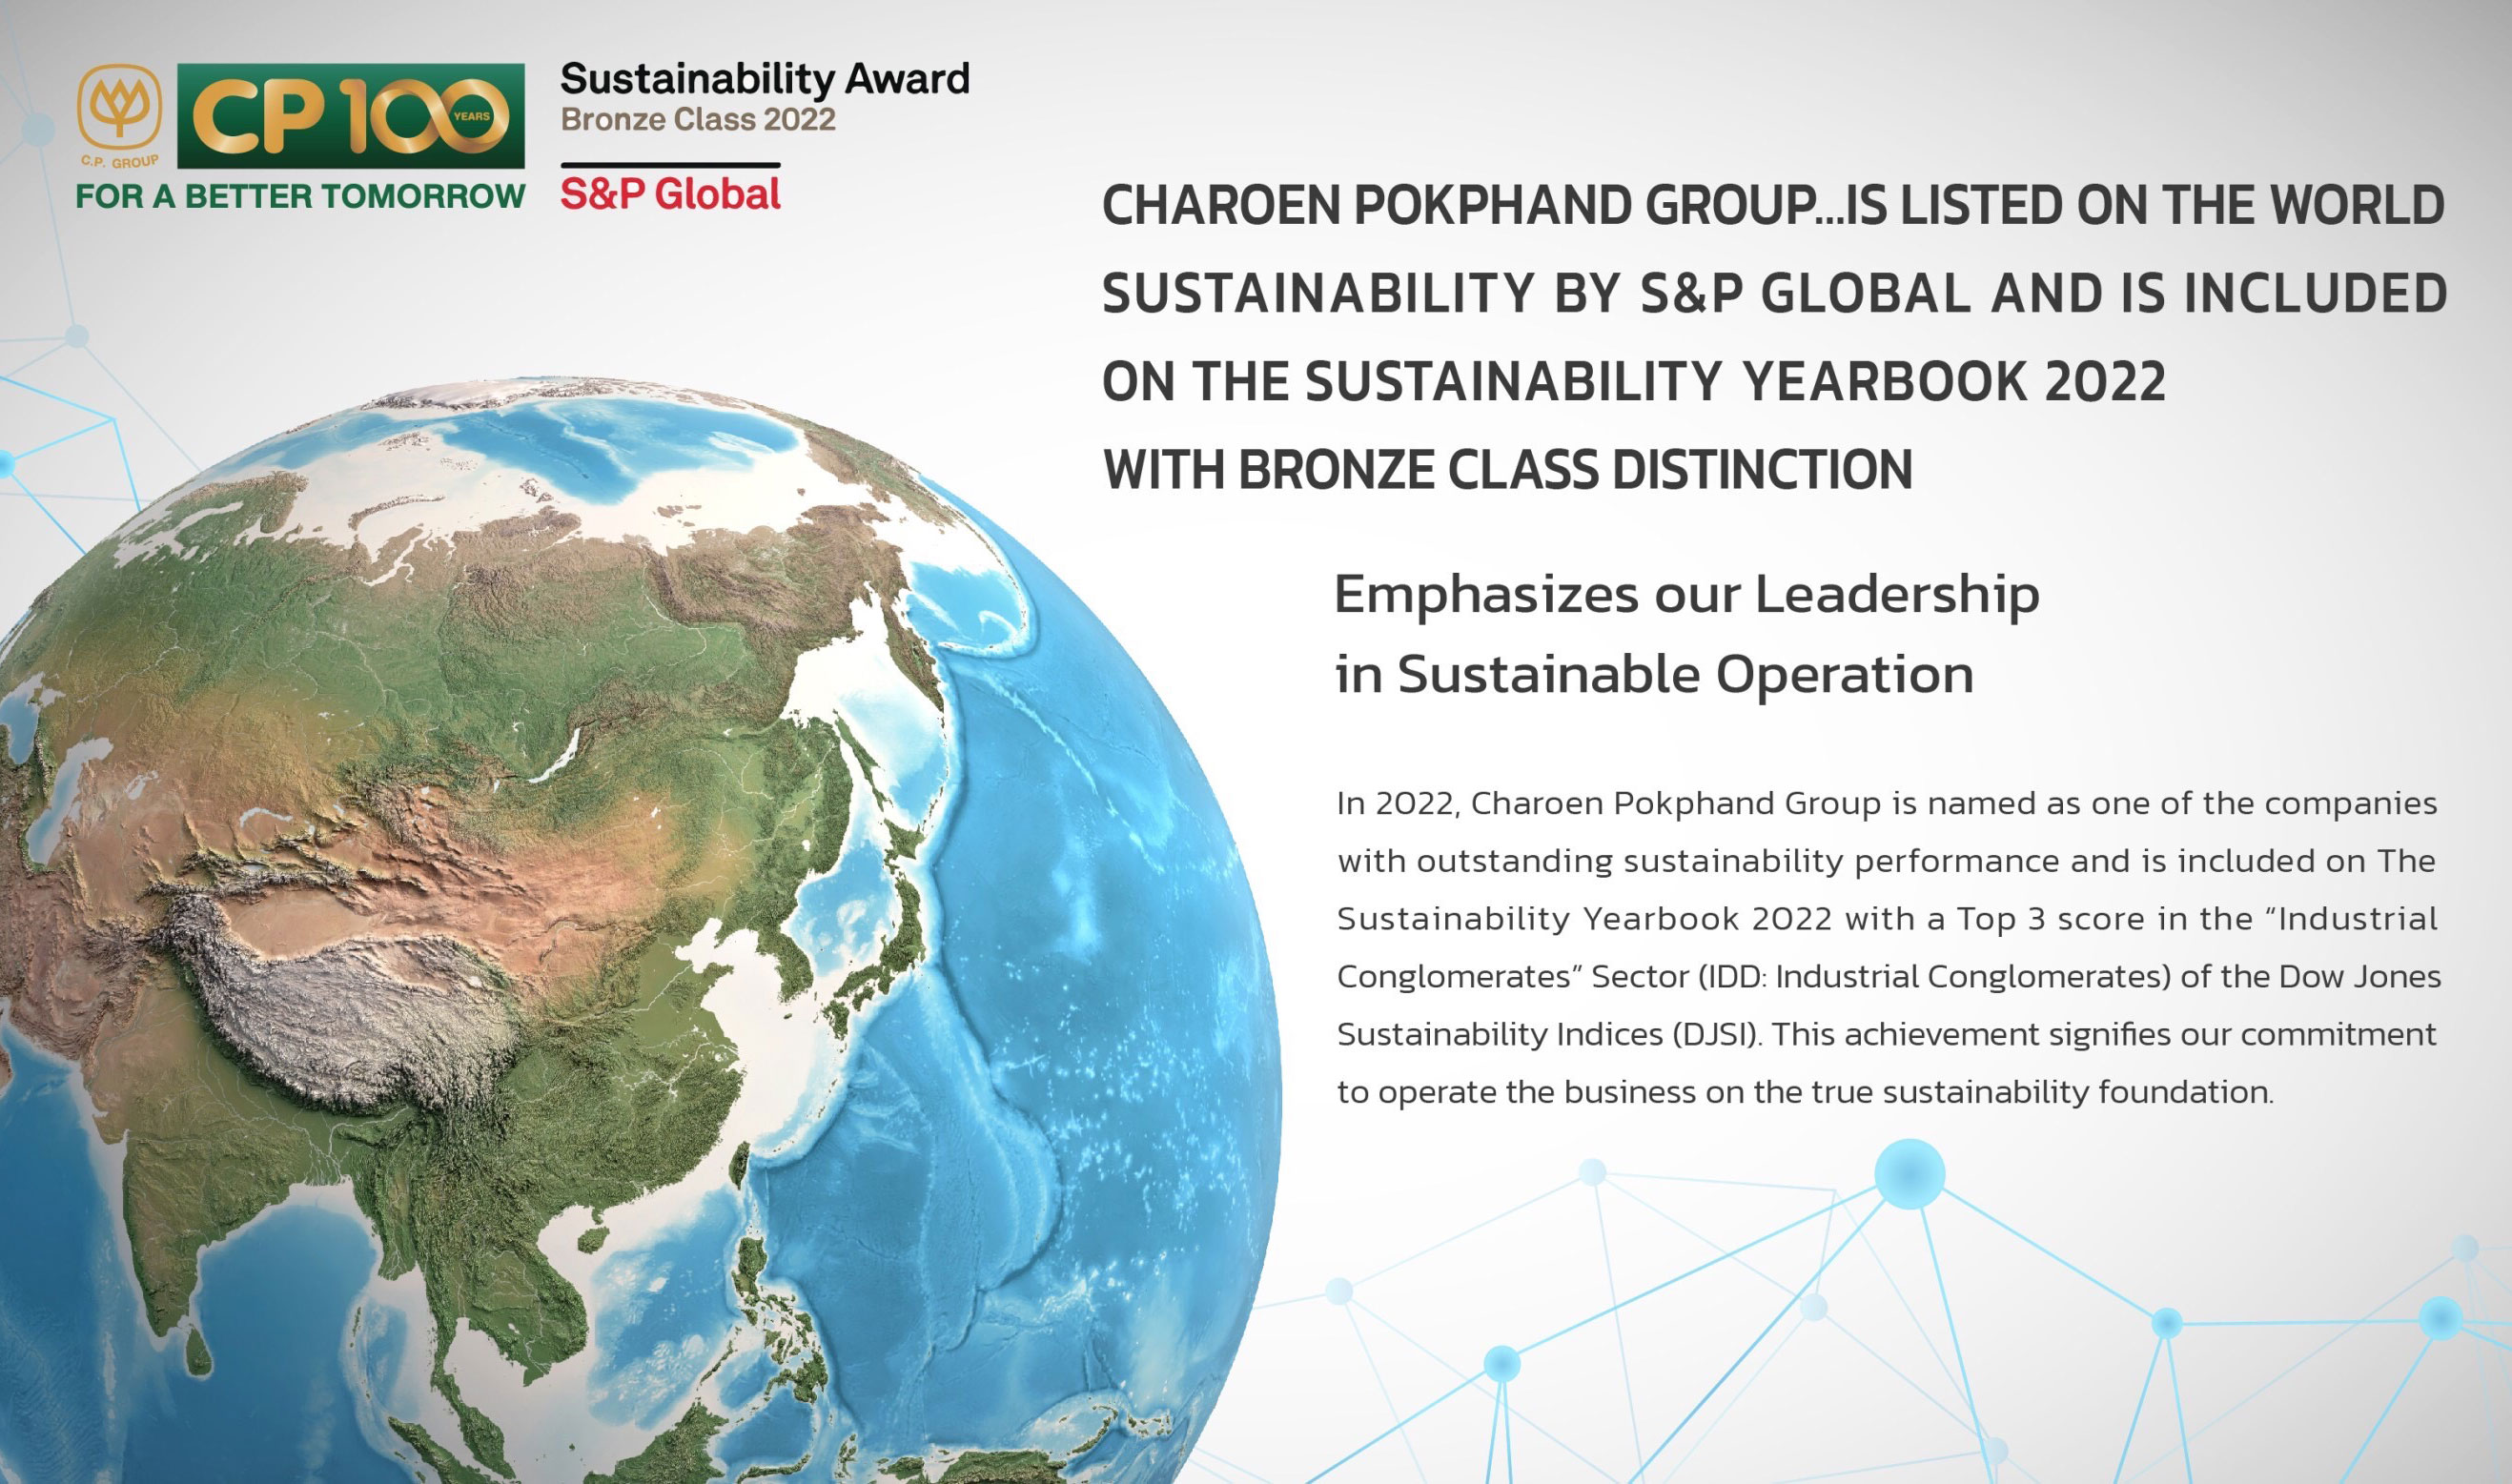 เครือซีพีติดอันดับความยั่งยืนในรายงาน The Sustainability Yearbook 2022 ระดับ Bronze Class ในกลุ่มอุตสาหกรรม Industrial Conglomerates จาก S&P Global ตอกย้ำผู้นำธุรกิจไทยมุ่งสู่ “องค์กรชั้นนำด้านความยั่งยืนระดับโลก”